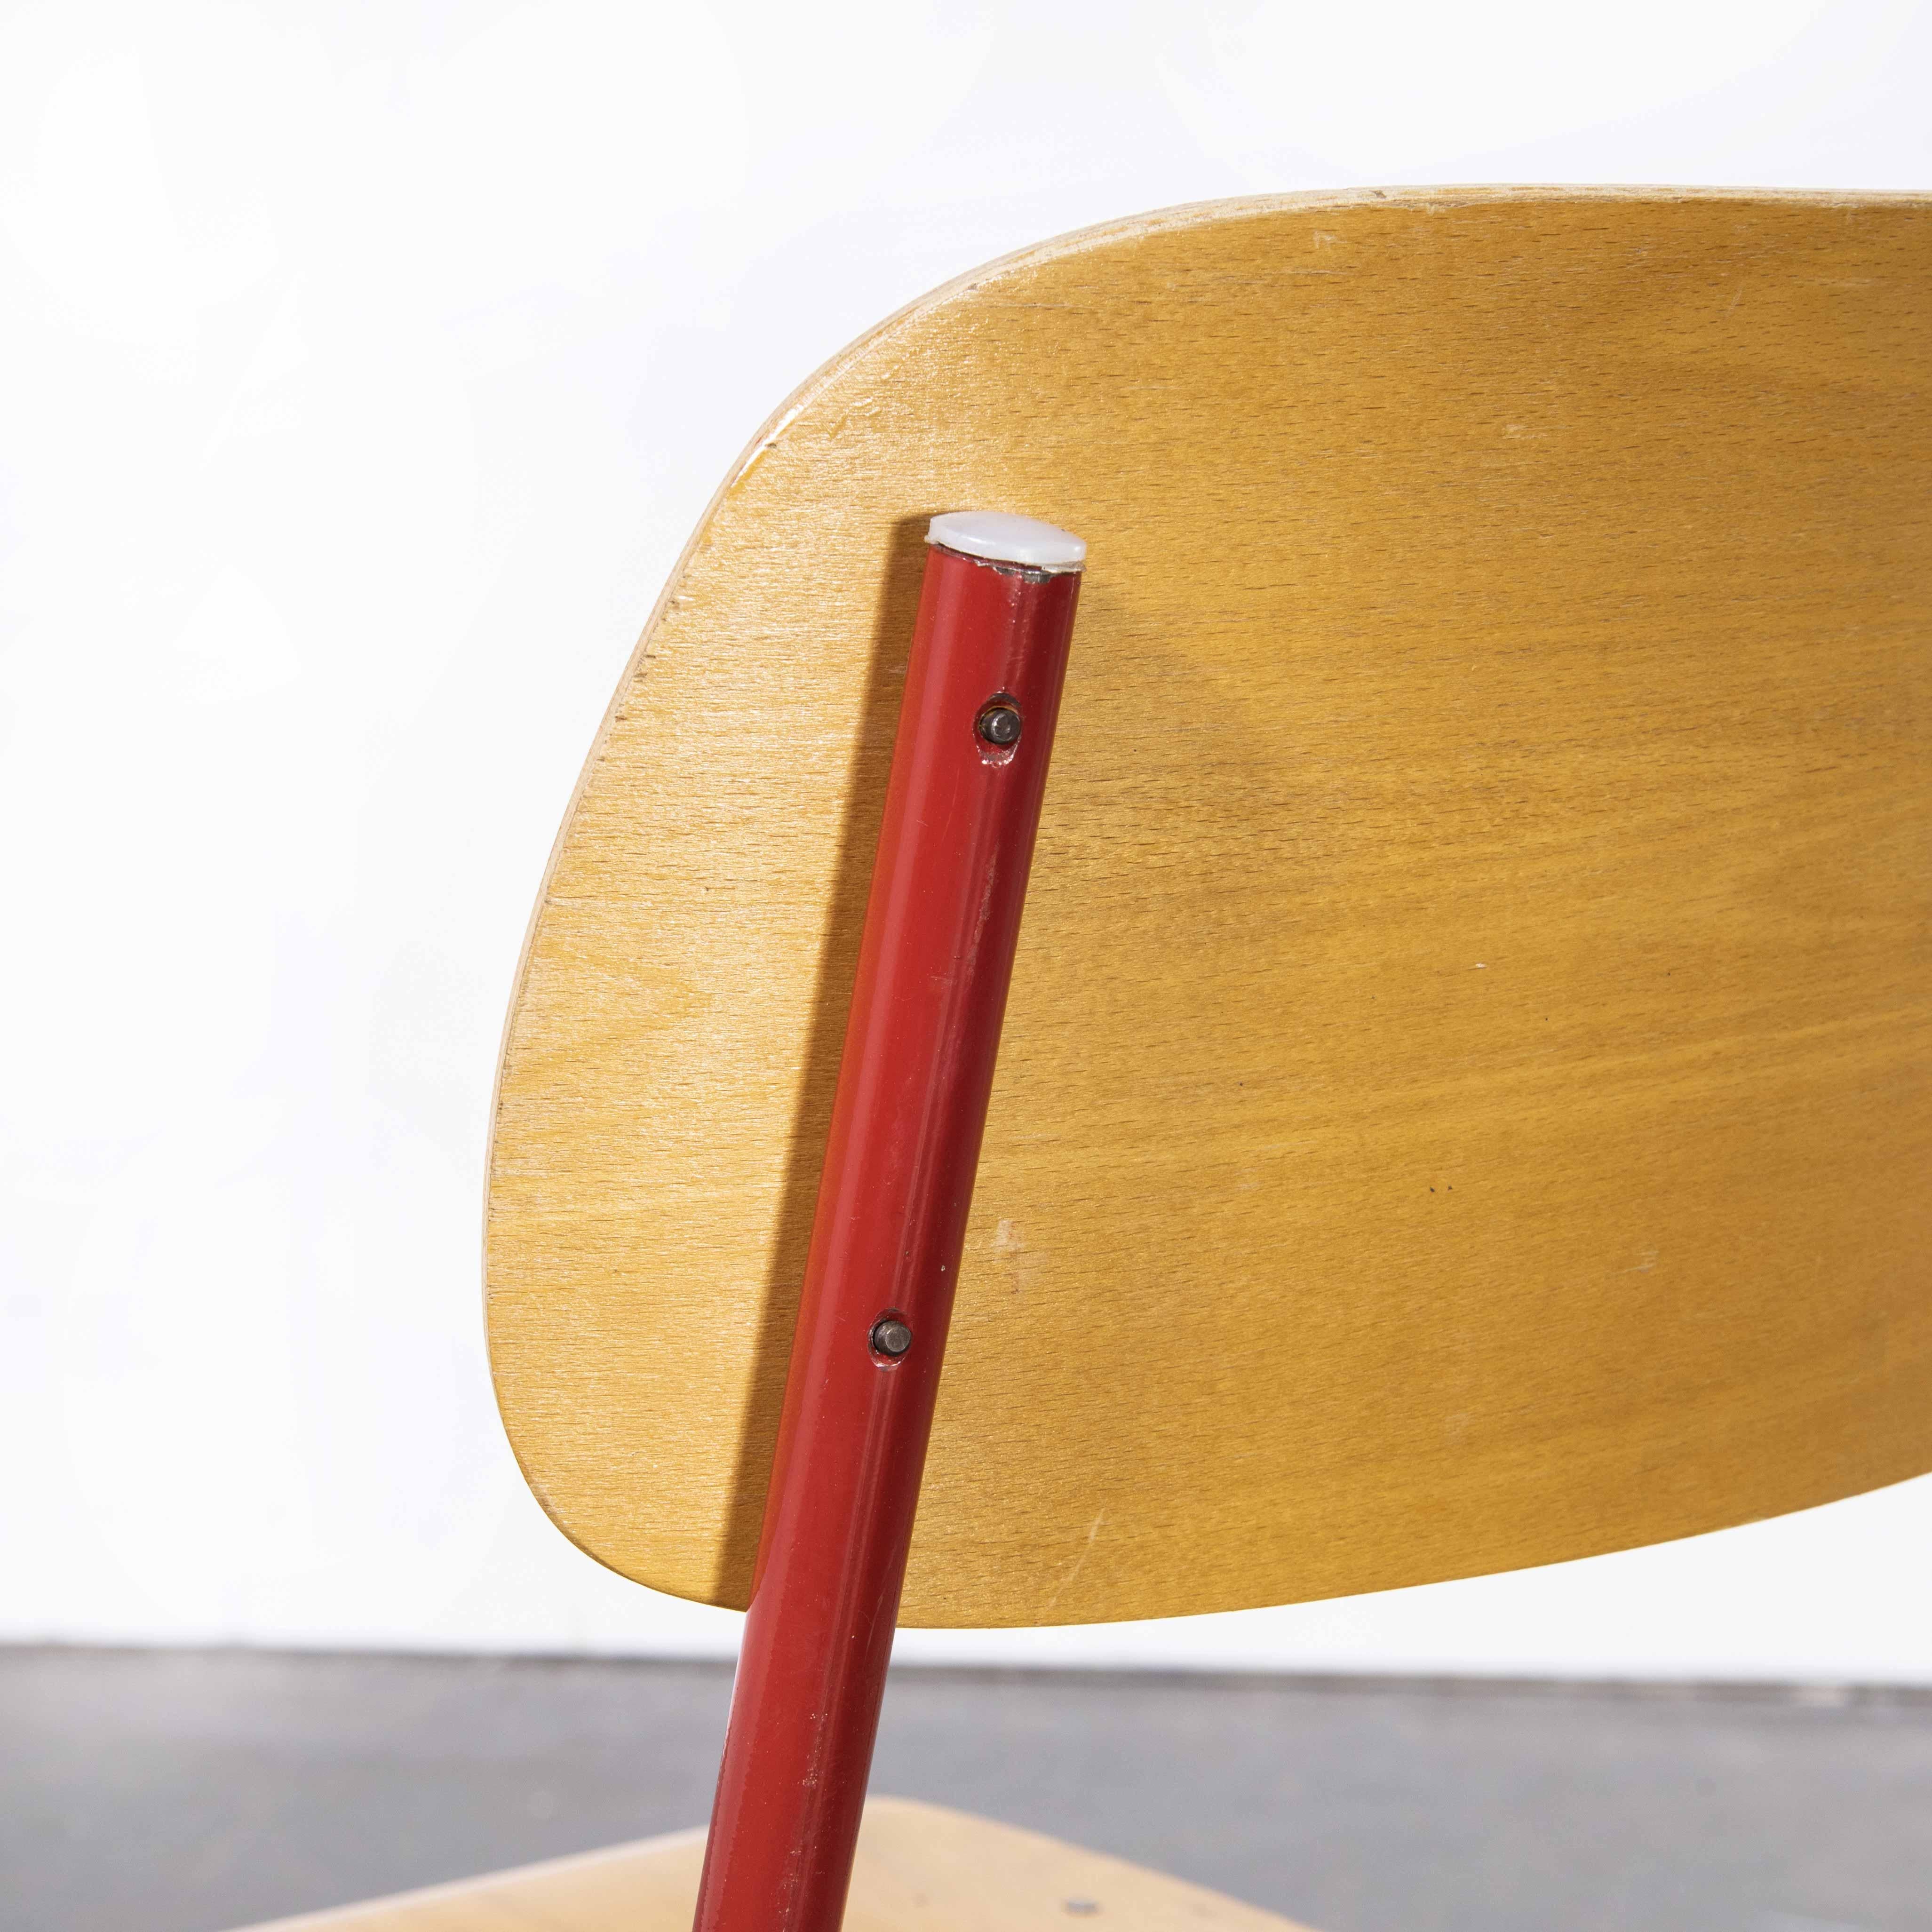 1970's Czech industrial stacking chairs - rot - verschiedene Mengen verfügbar
tschechische Stapelstühle aus den 1970er Jahren - rot - verschiedene Mengen verfügbar. Robuste Stühle im Industriestil, die typischerweise in Schulen und kommerziellen